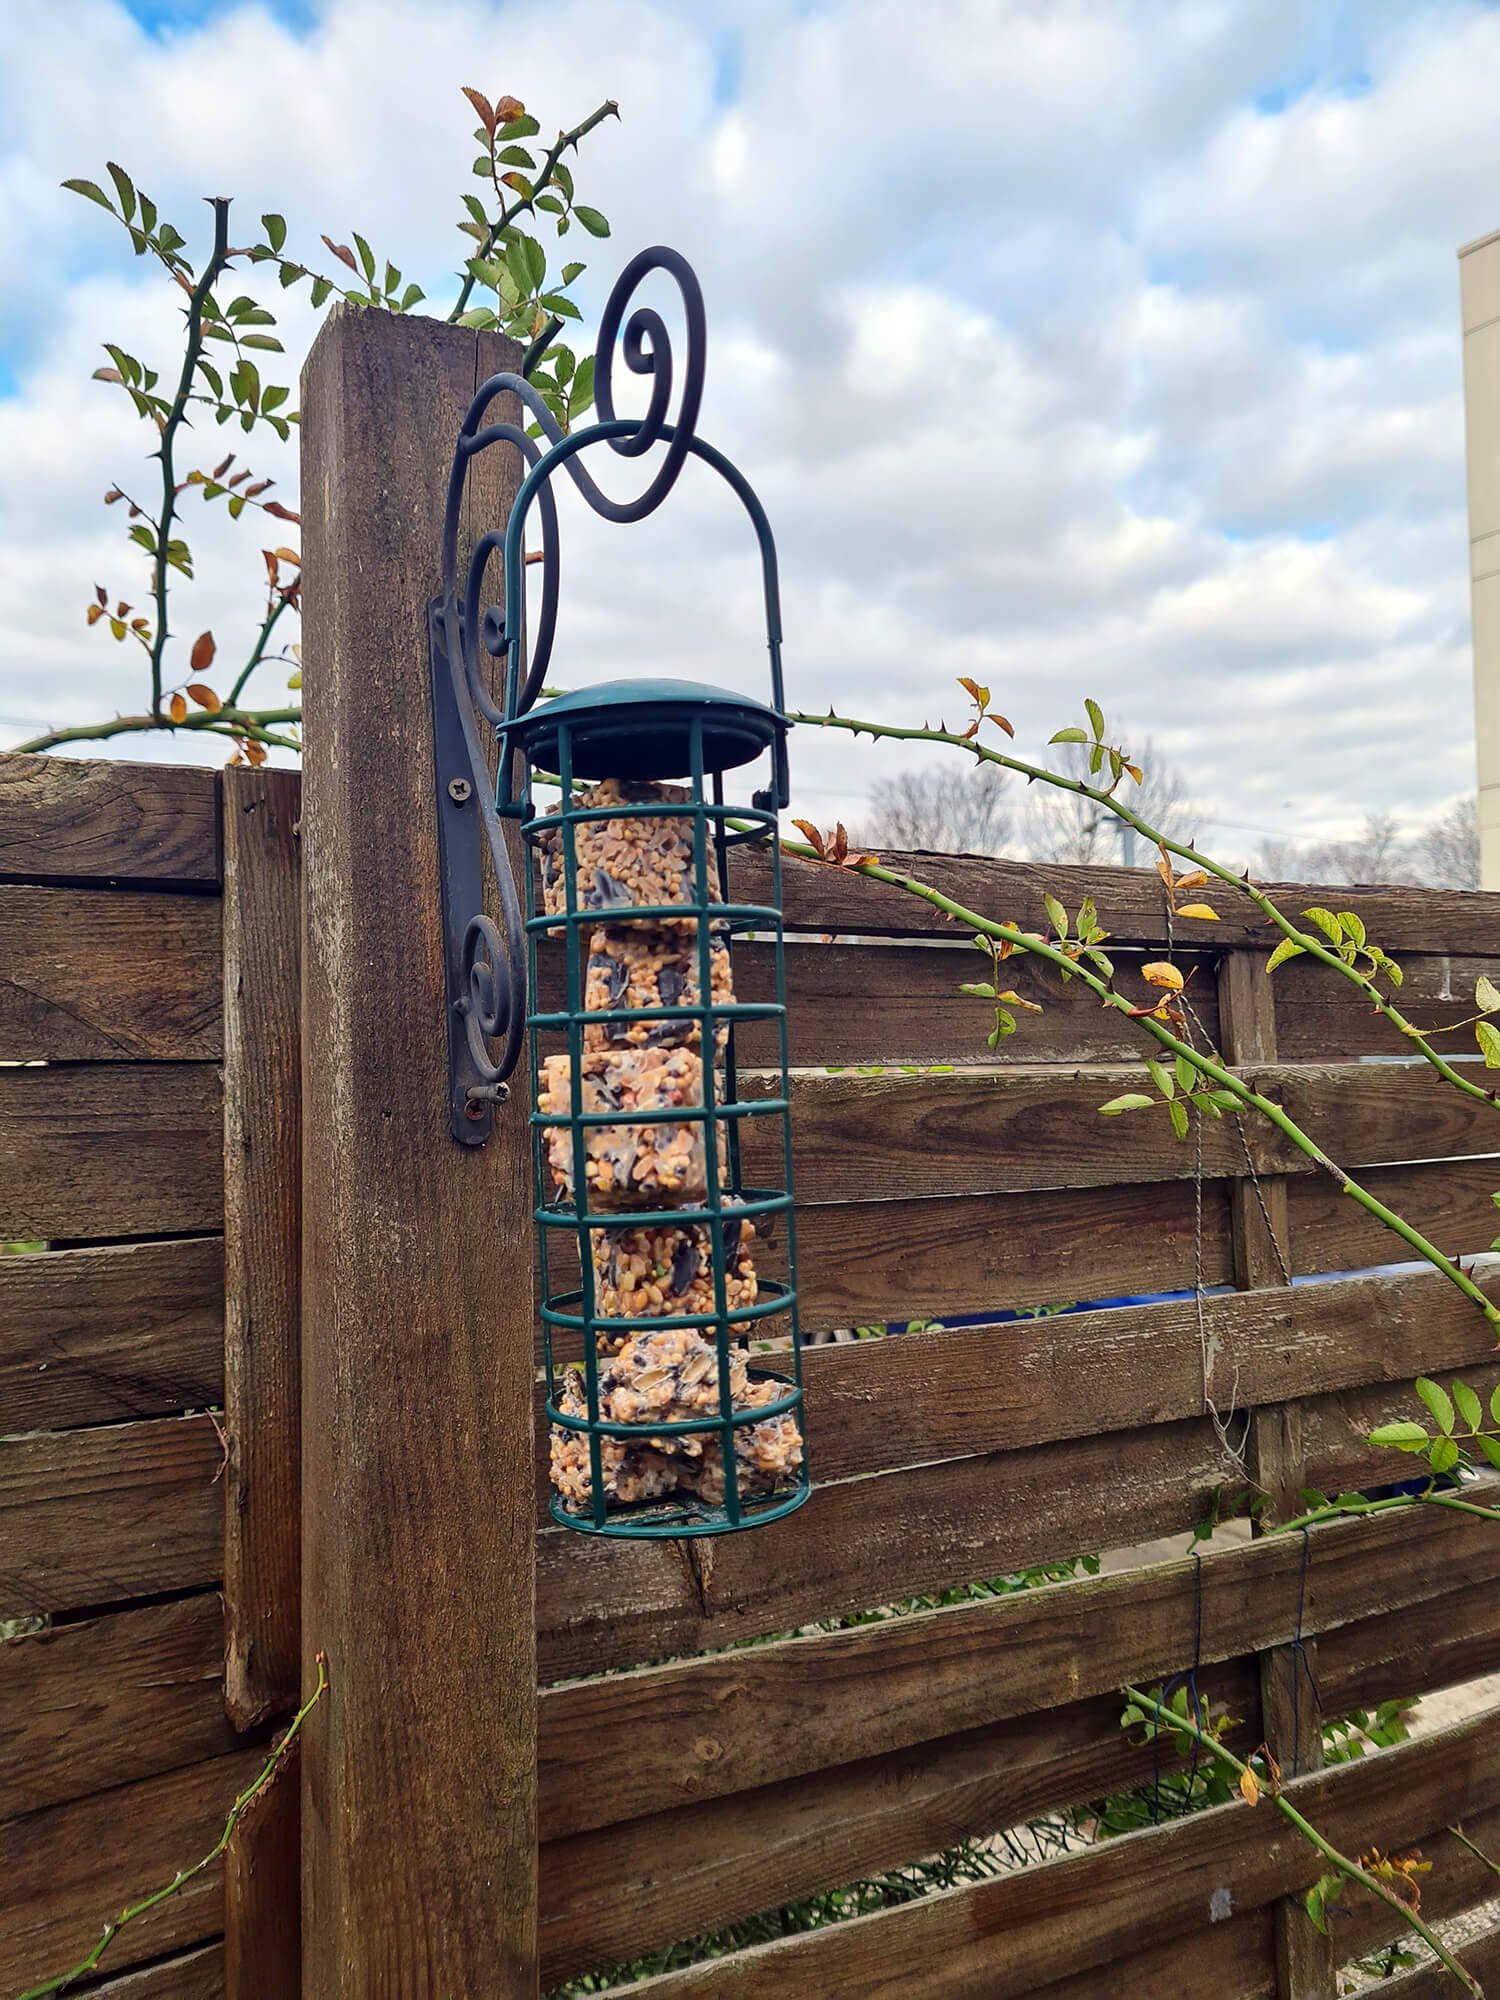 20210108 133517 - 3 DIY pour nourrir les oiseaux dans le jardin